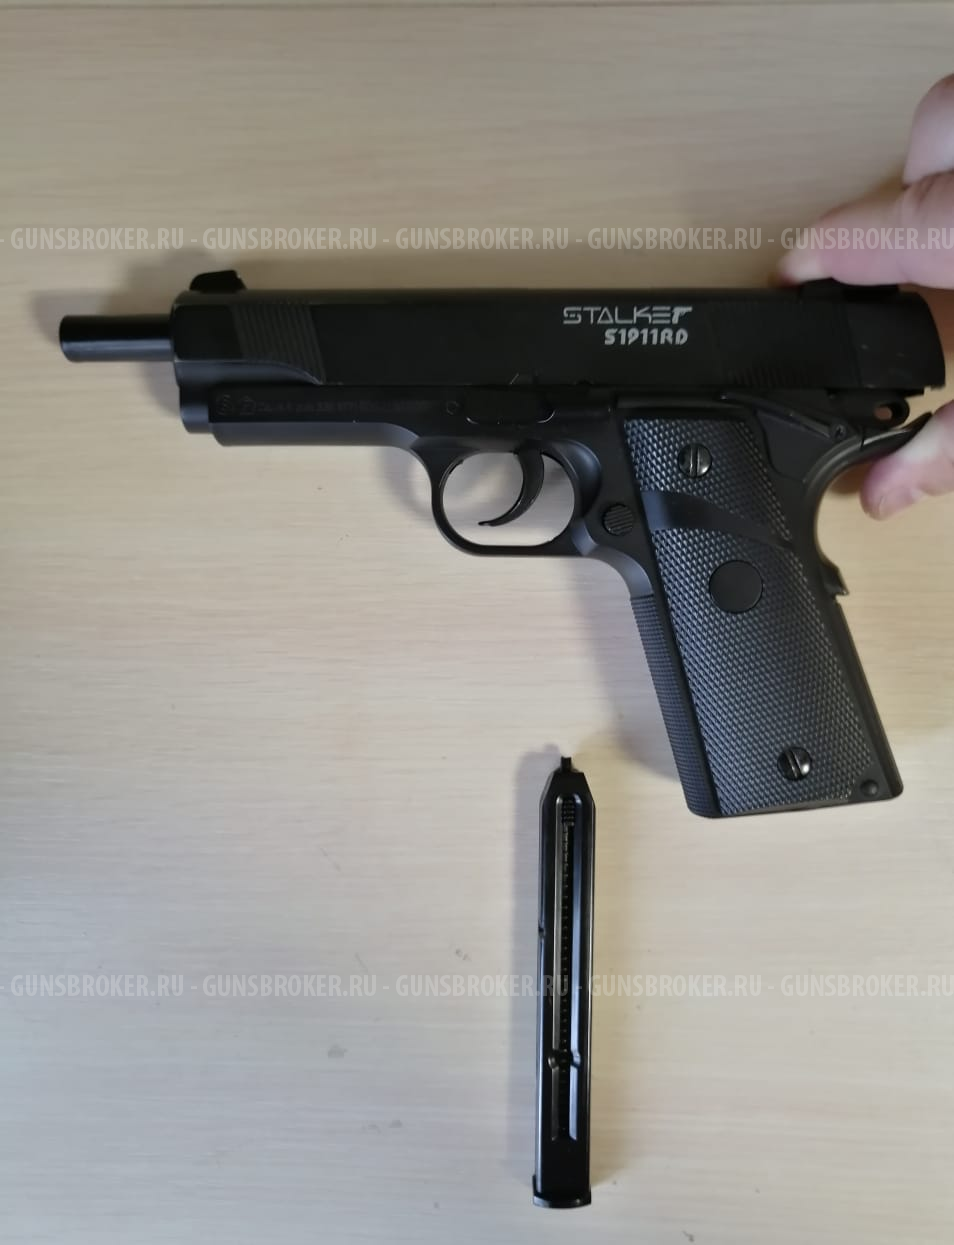 Stalker S1911RD (Colt)